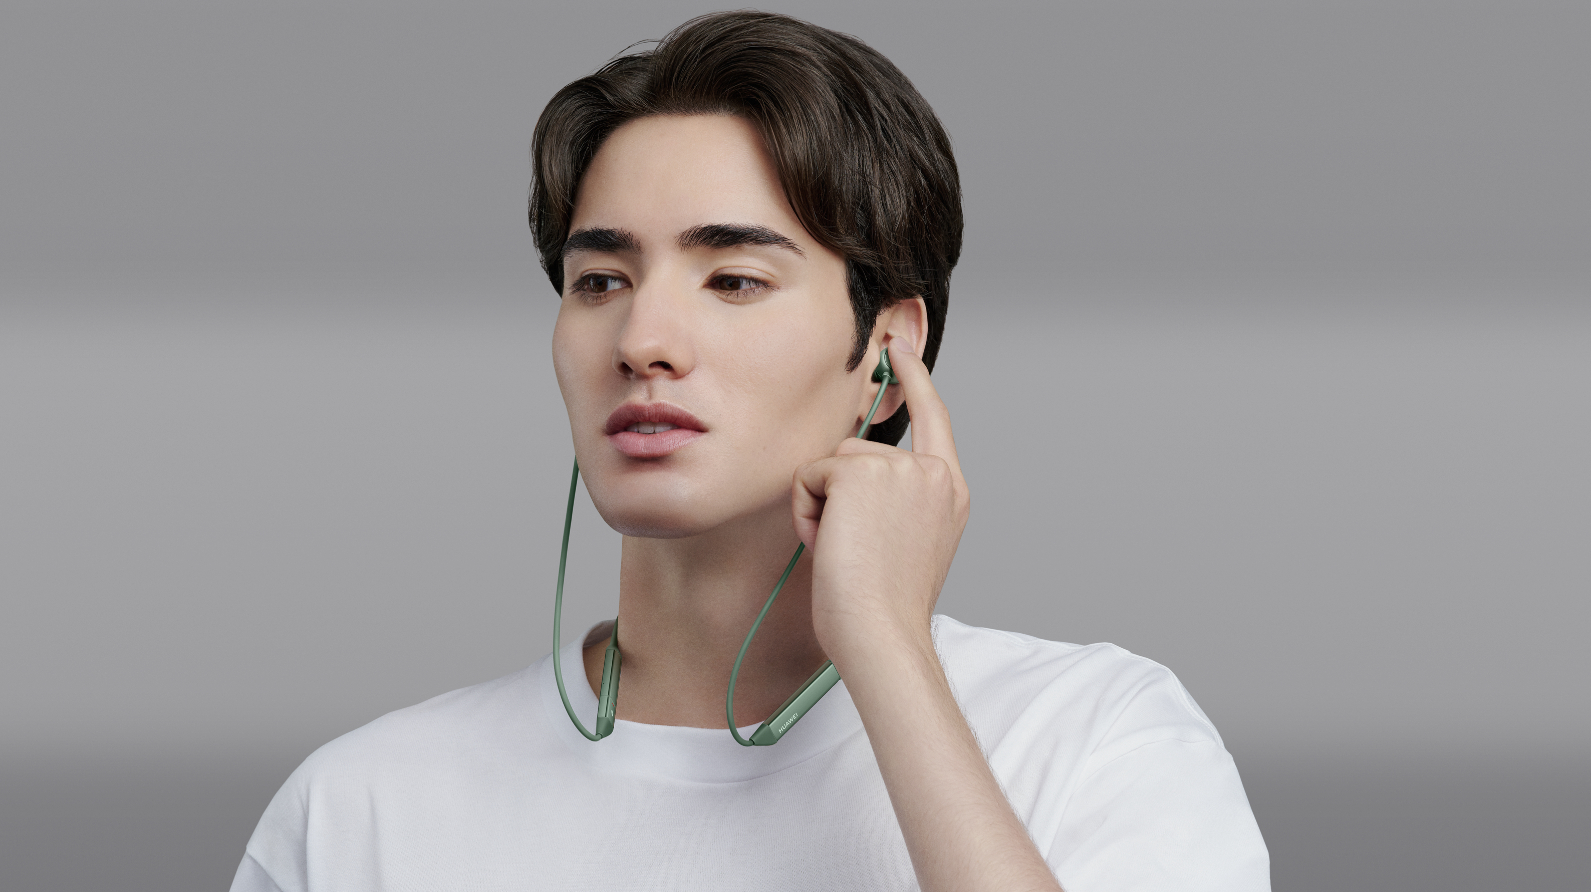 Grün HUAWEI Pro, Kopfhörer In-ear Bluetooth FreeLace